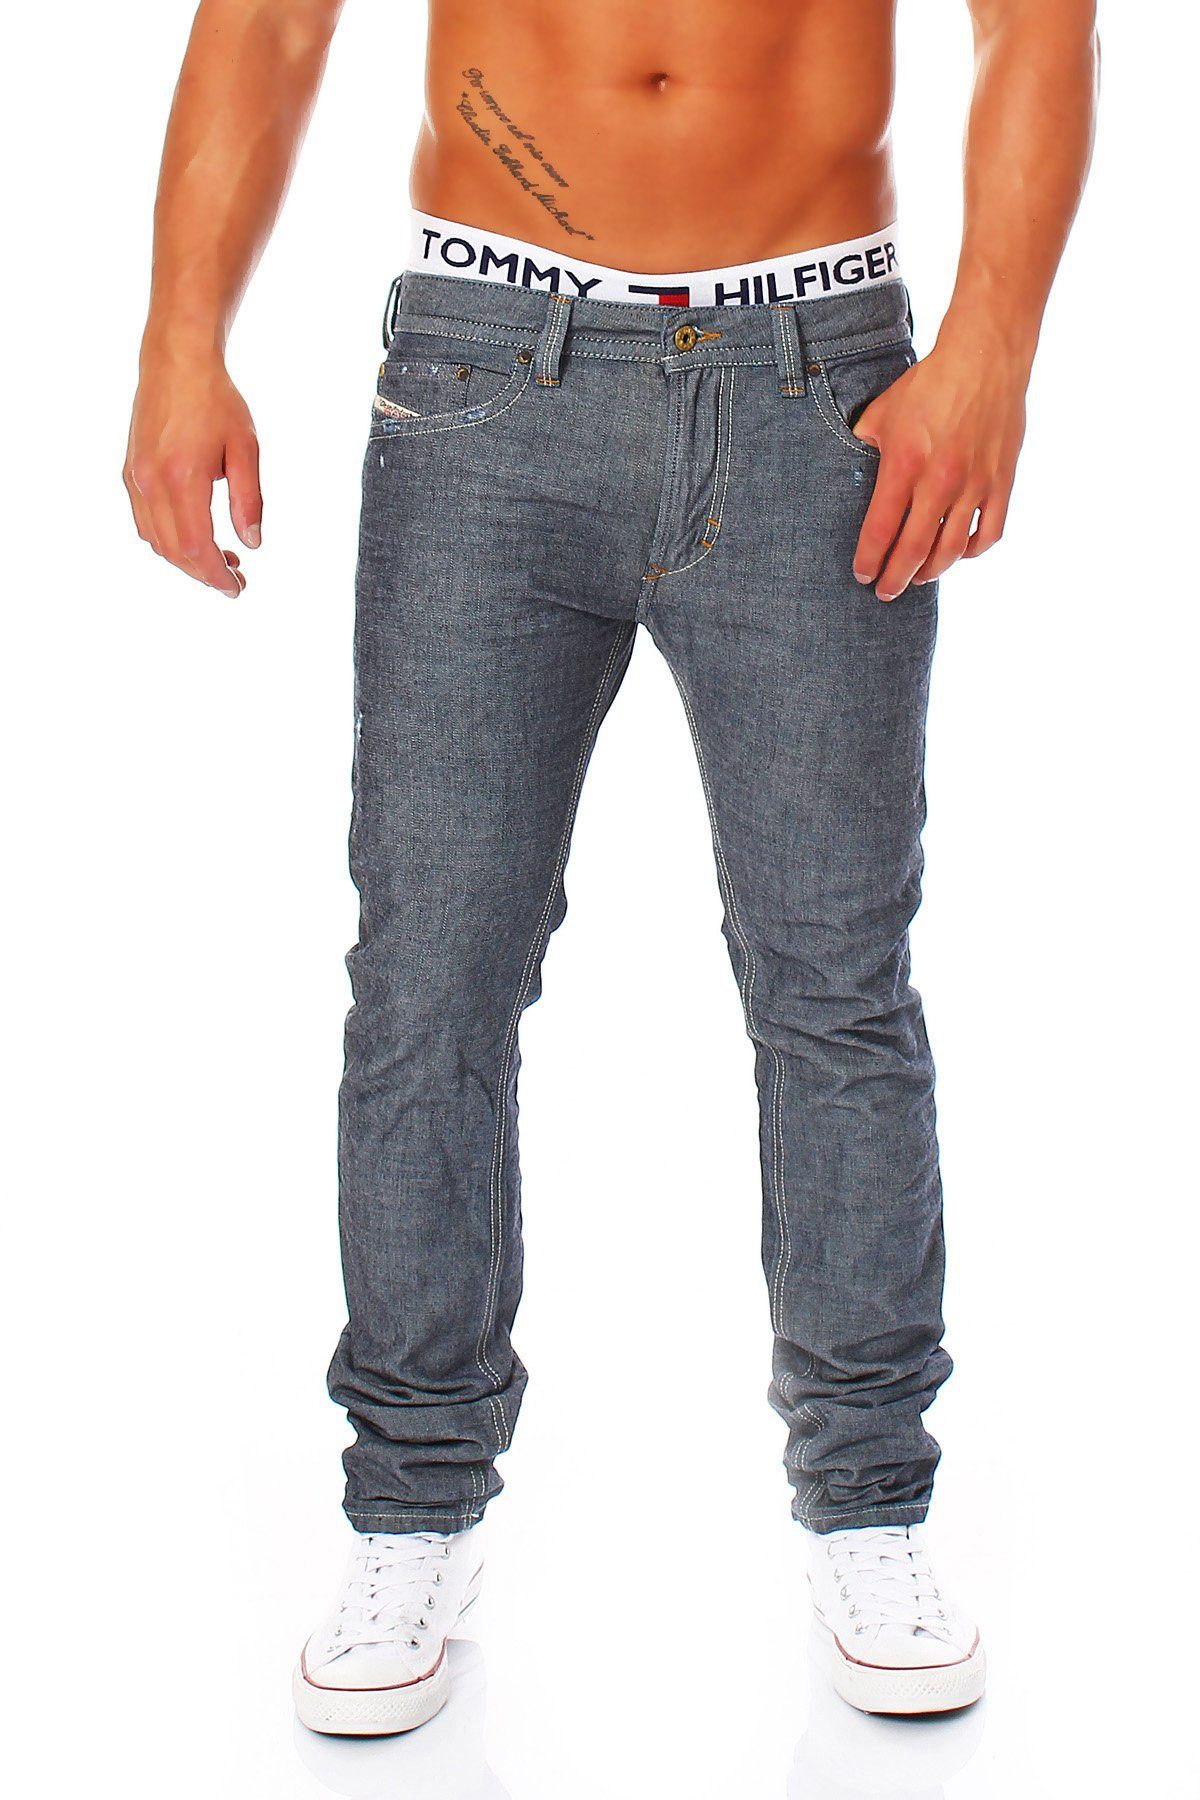 5 Style, Thavar Dezenter Pocket 0809D Used-Look Slim-fit-Jeans Blau-Grau, Herren Röhrenjeans, Diesel